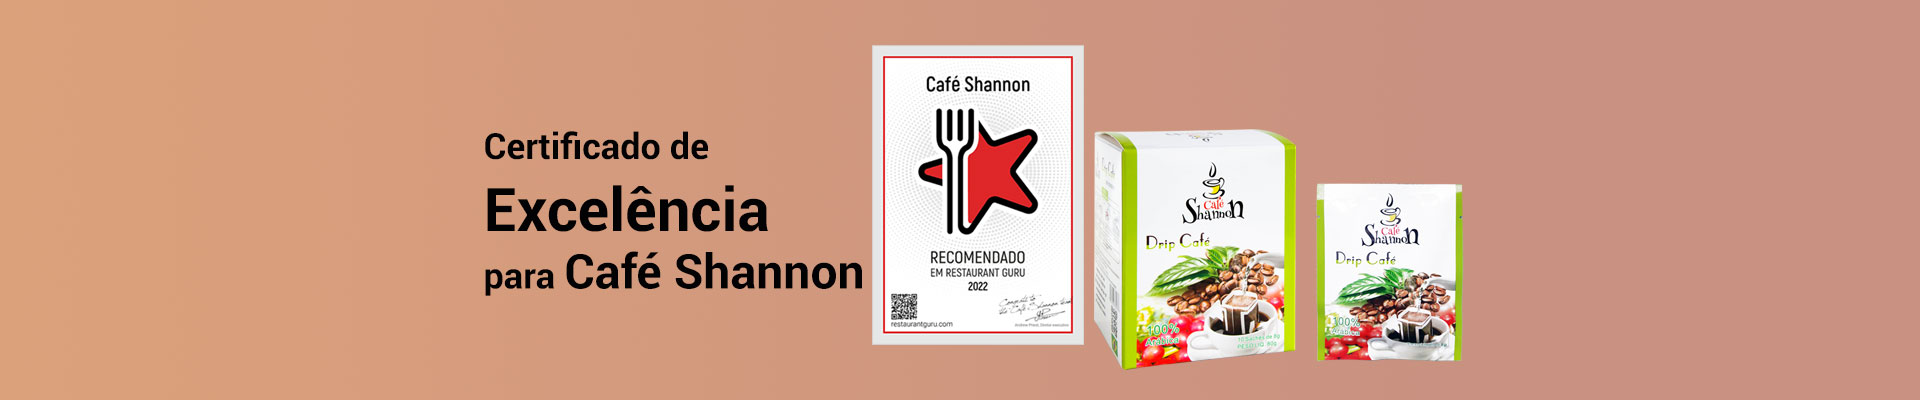 café shannon